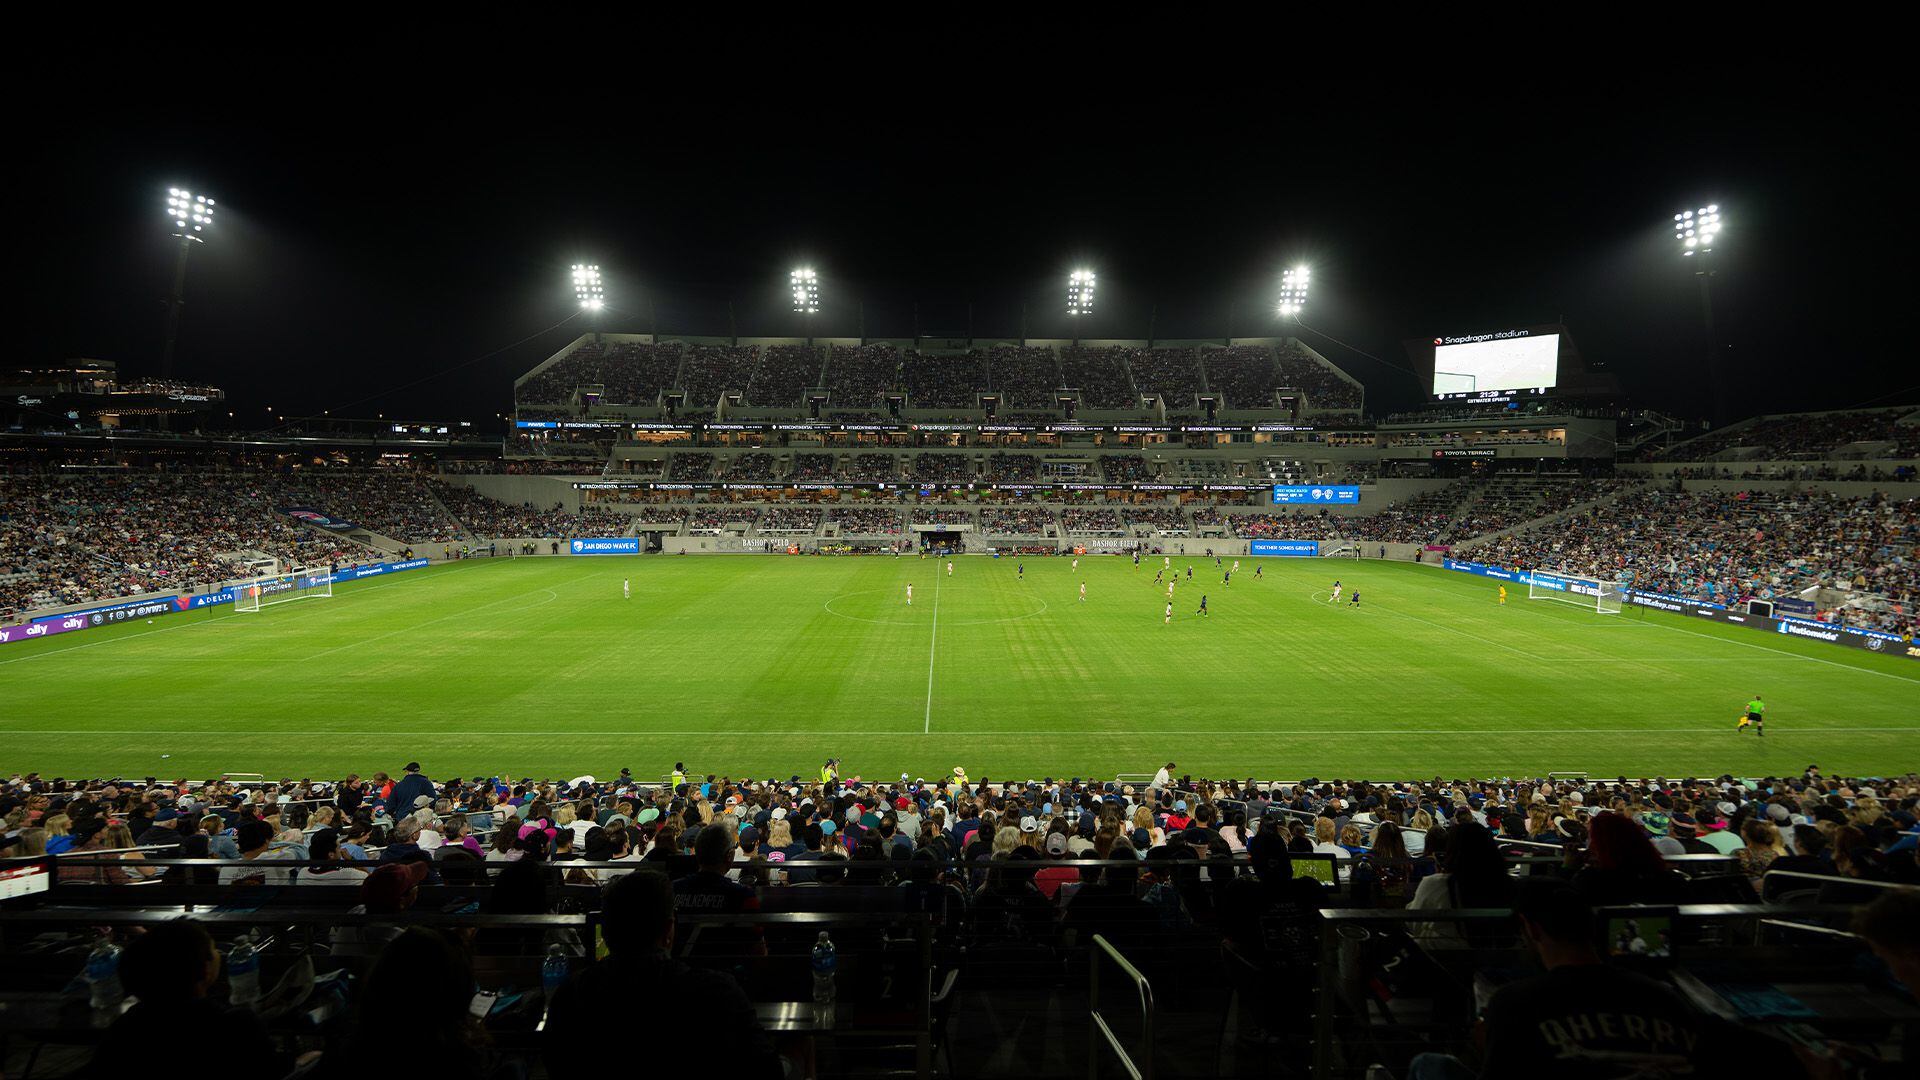 El estadio Snapdragon queda ubicado en la ciudad de San Diego, California, en el cual se están jugando - crédito Snapdragon Stadium Official